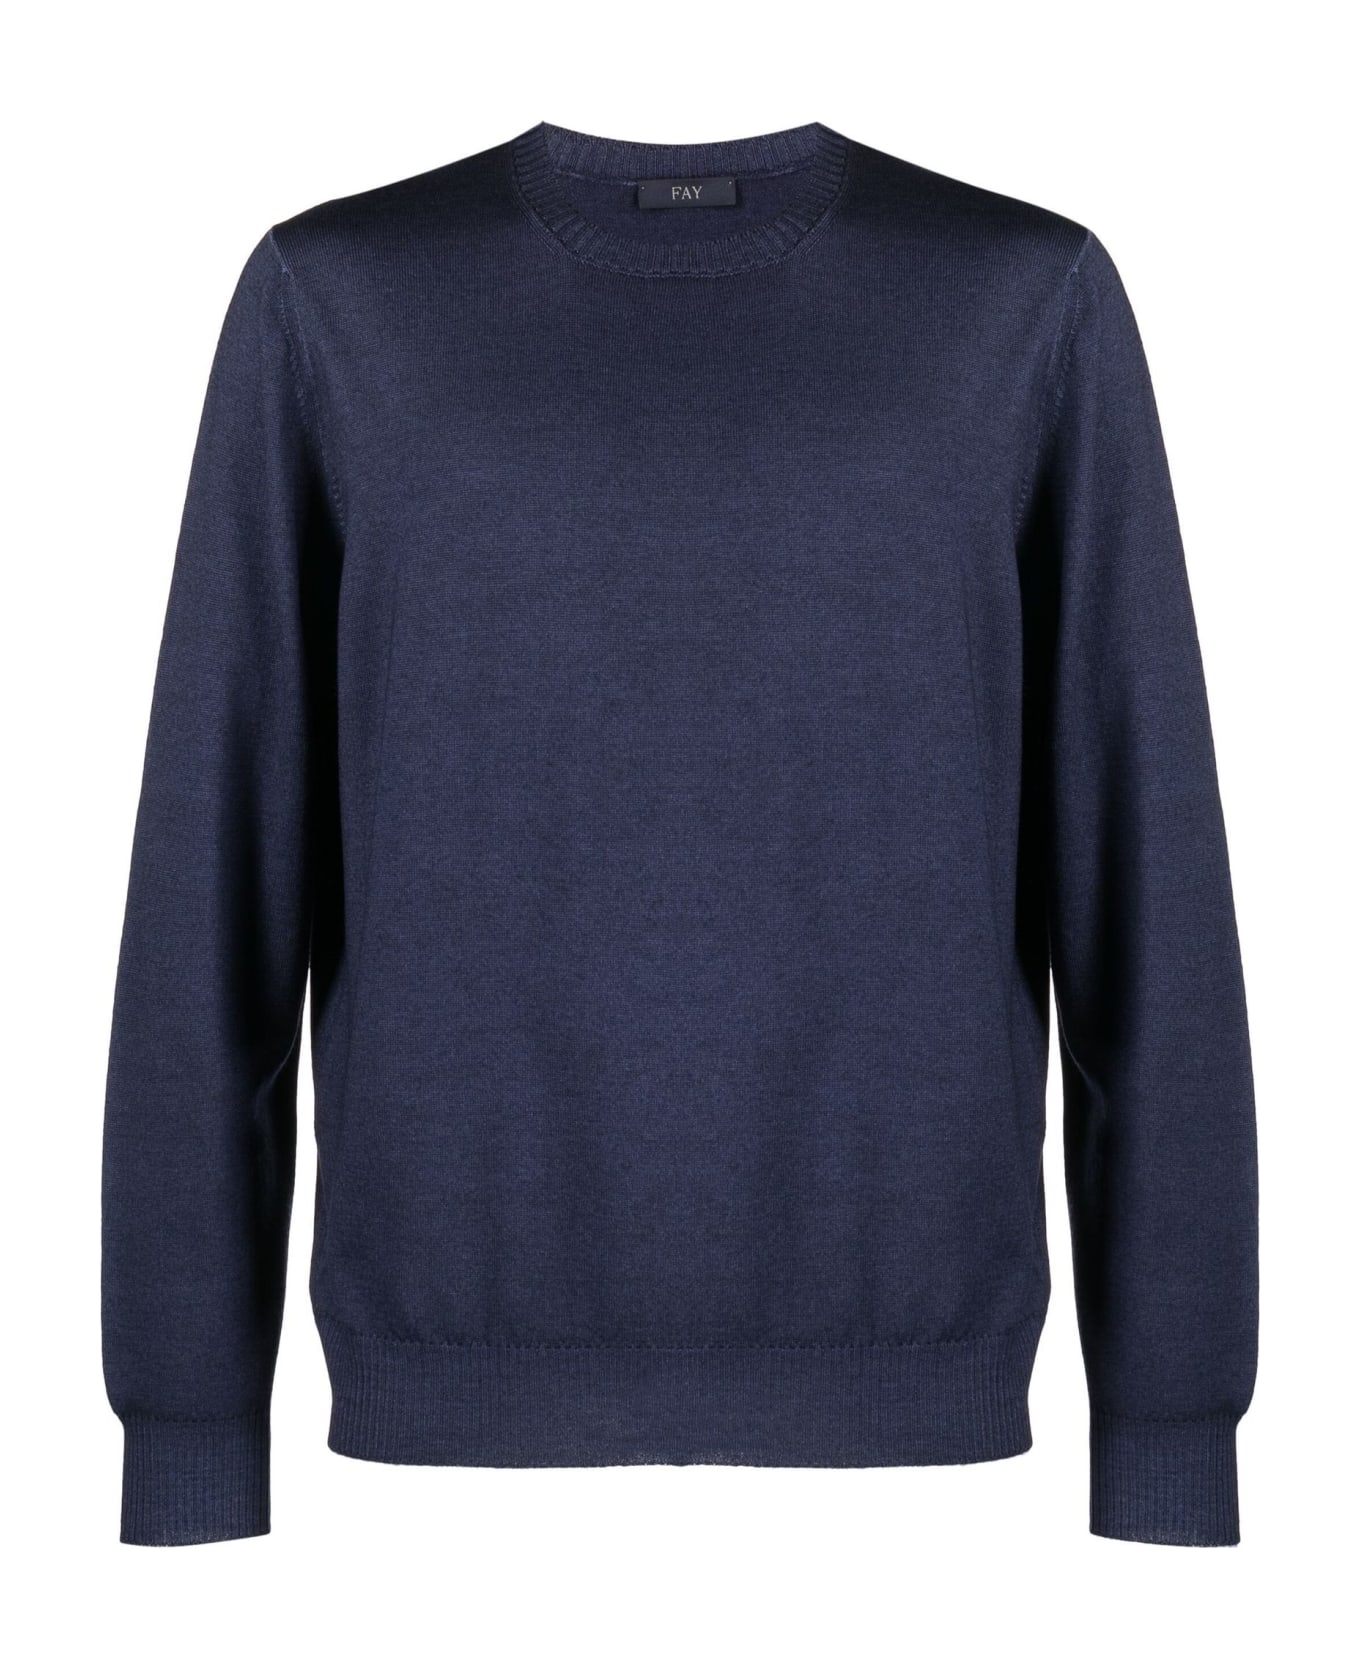 Fay Navy Blue Virgin Wool Jumper Sweater - BLU